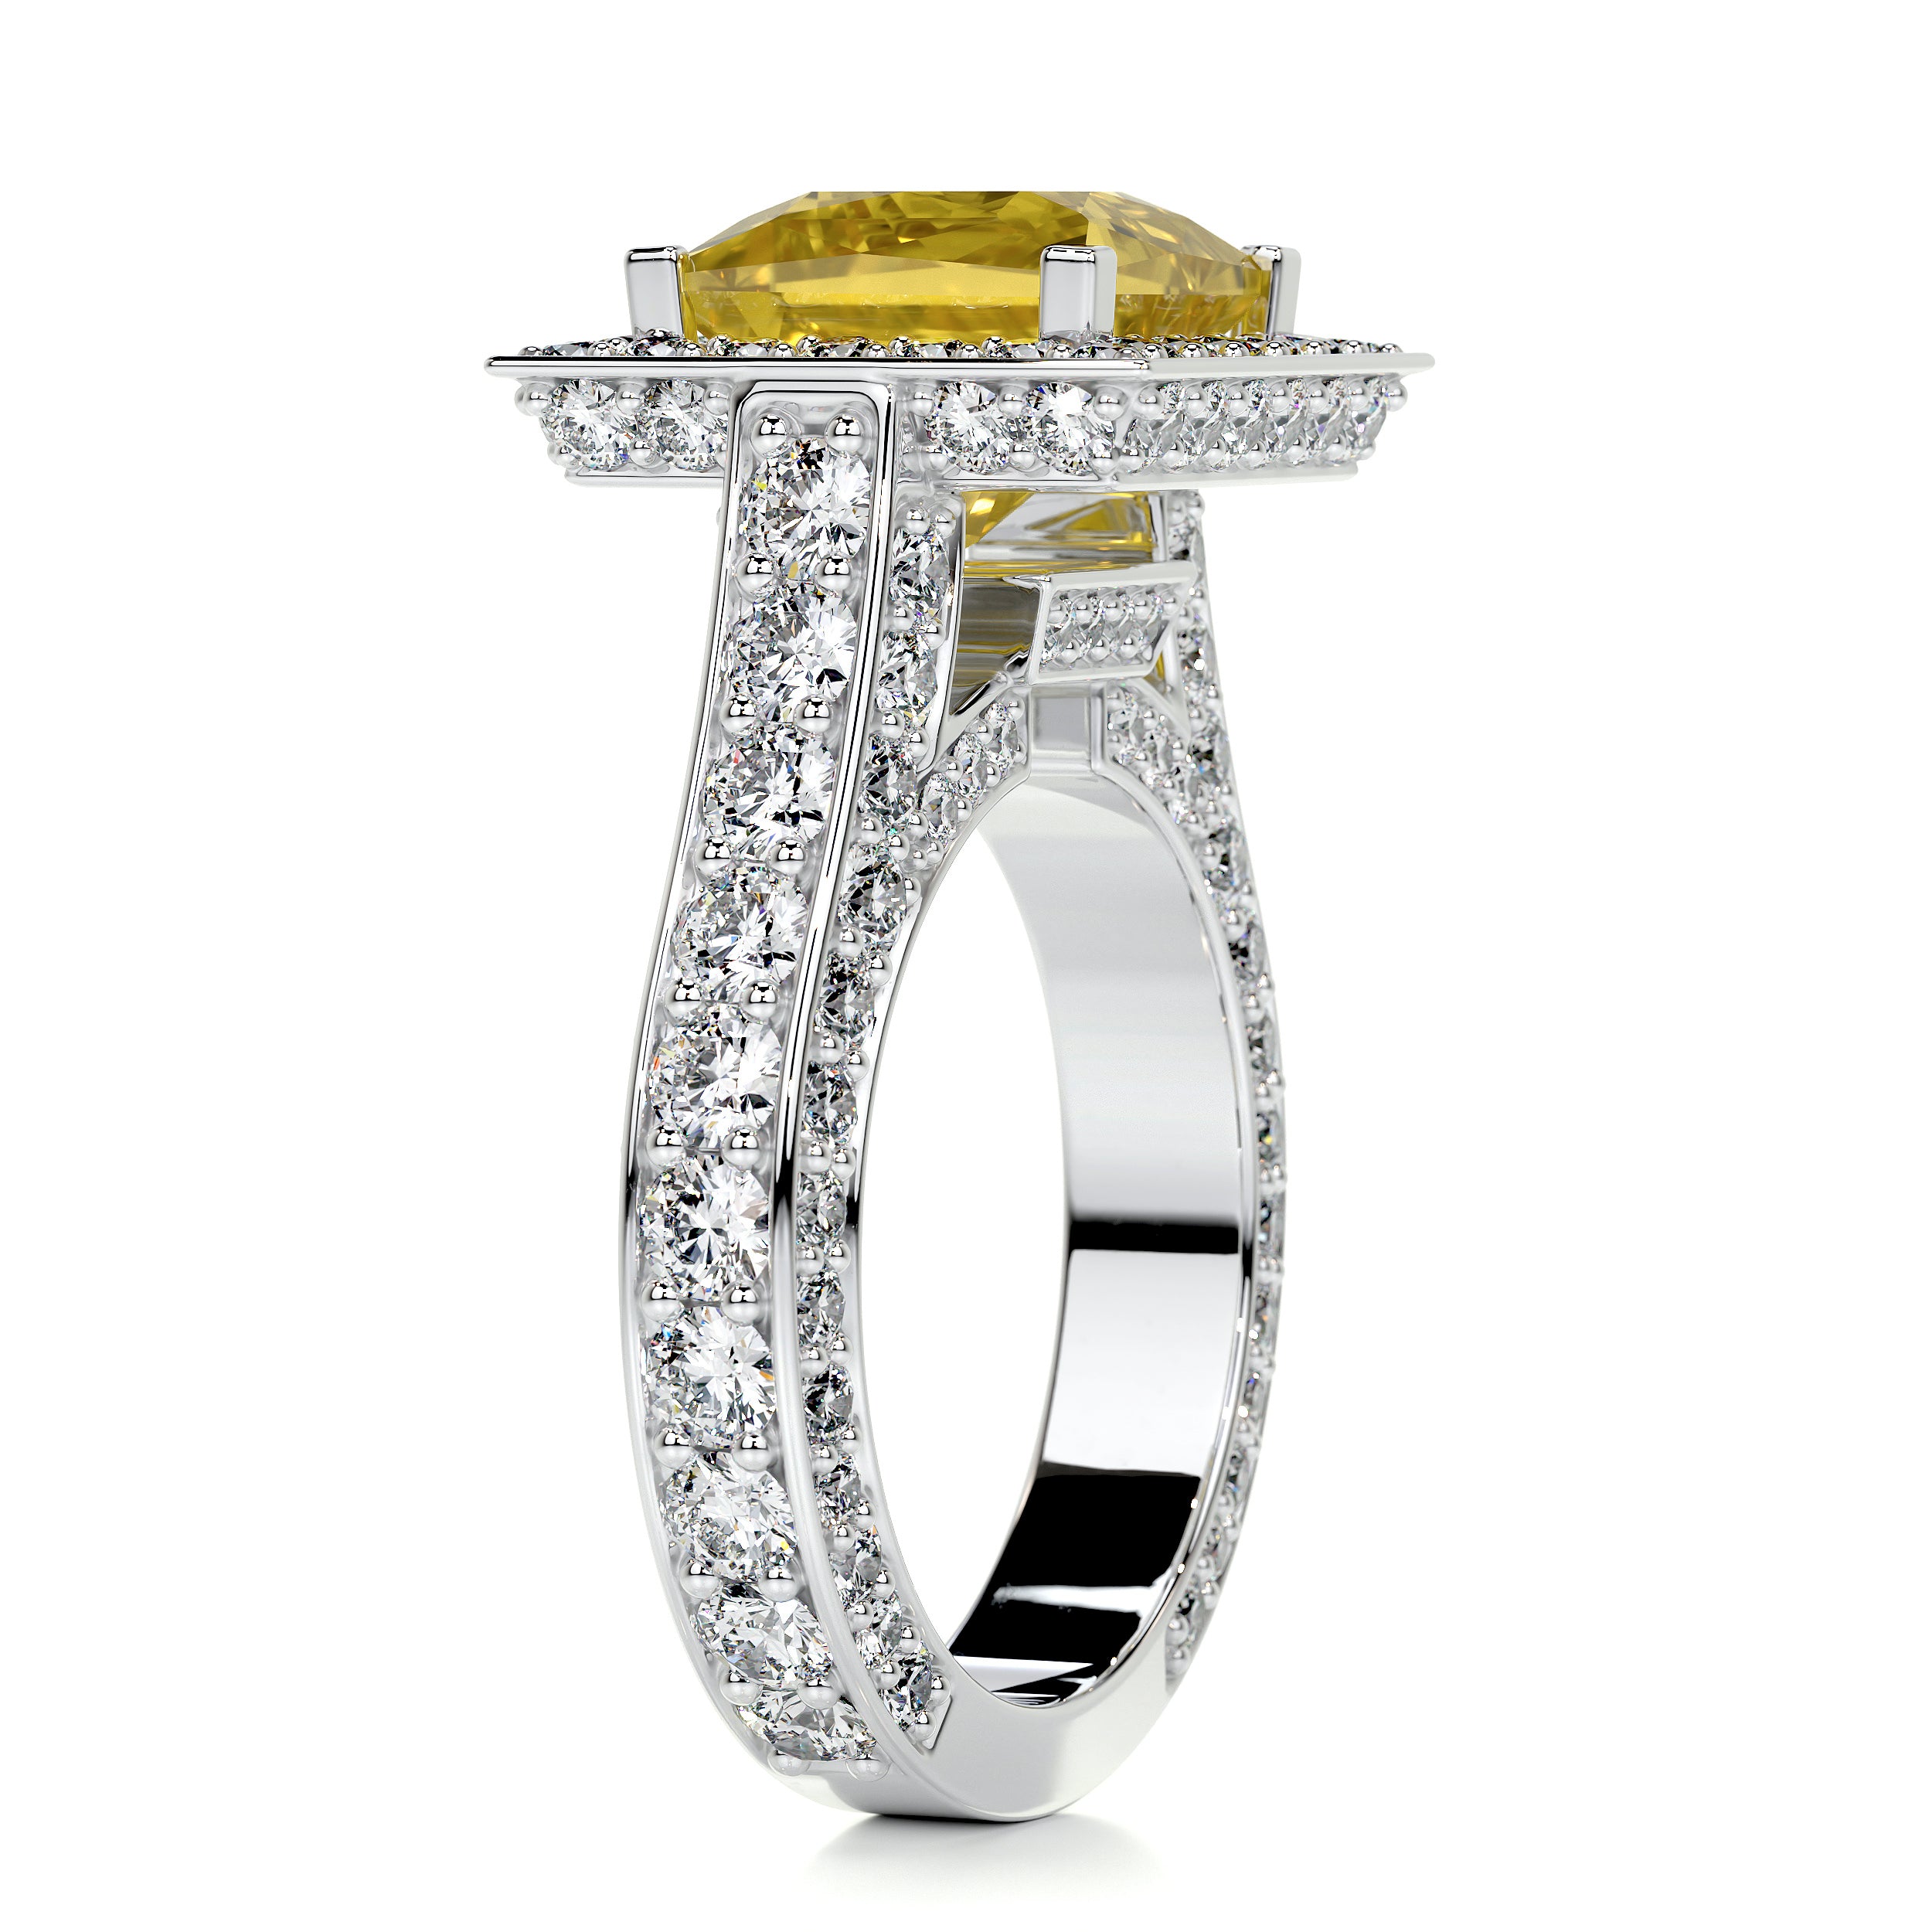 Freya Diamond Engagement Ring   (4.5 Carat) -Platinum